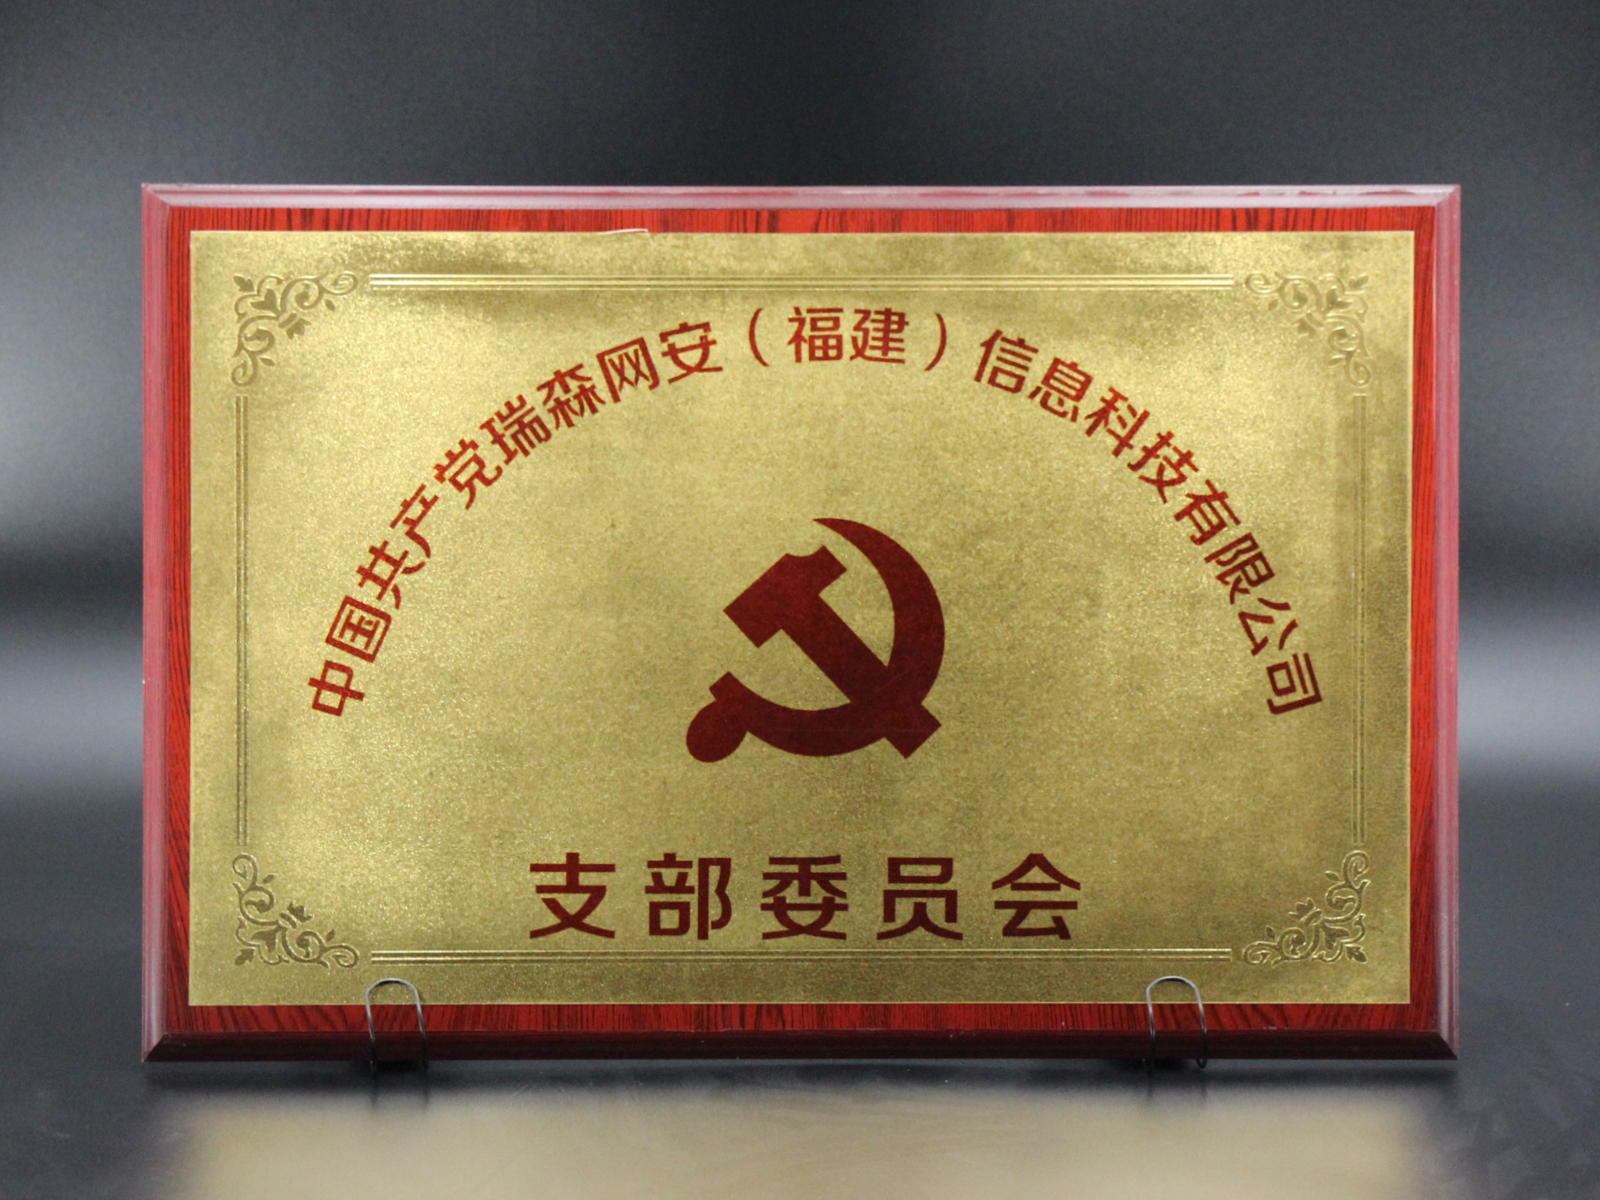 中国共产党瑞森网安（福建）信息科技有限公司支部委员会